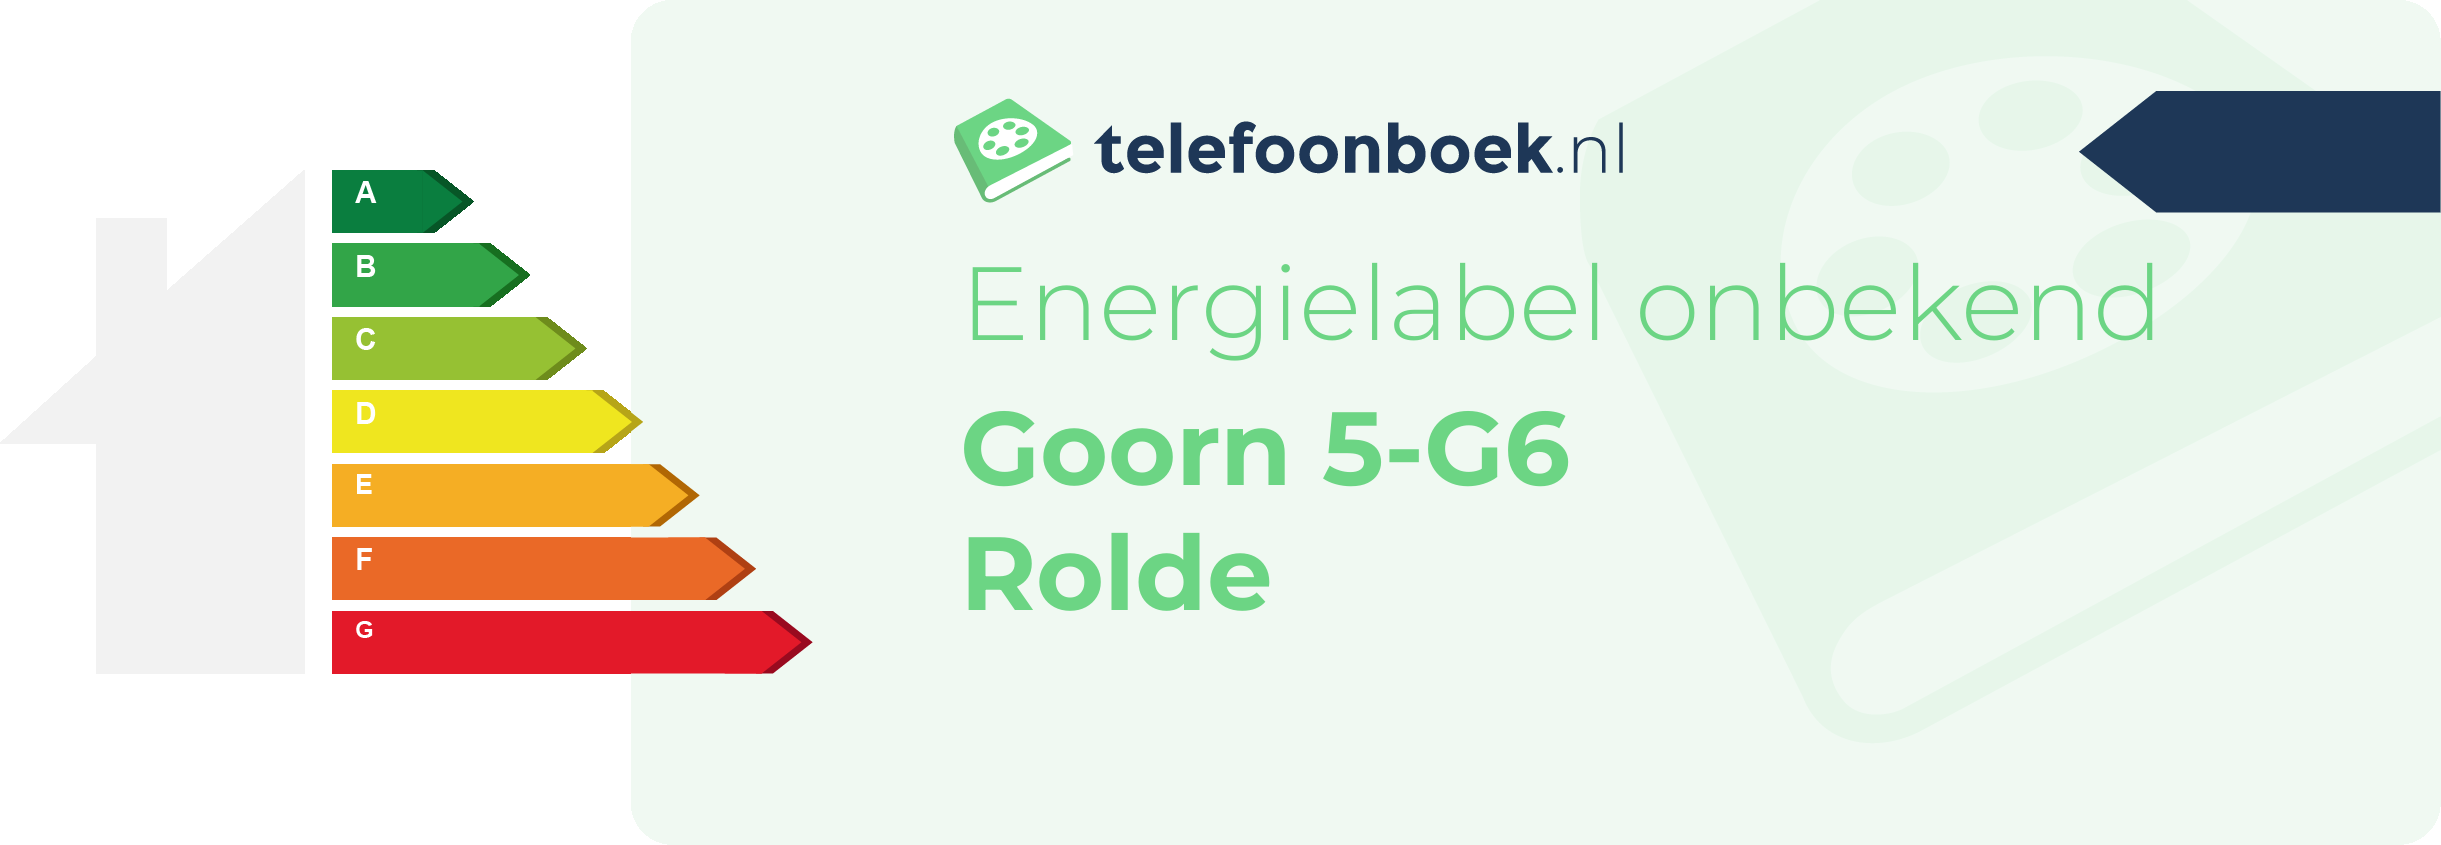 Energielabel Goorn 5-G6 Rolde